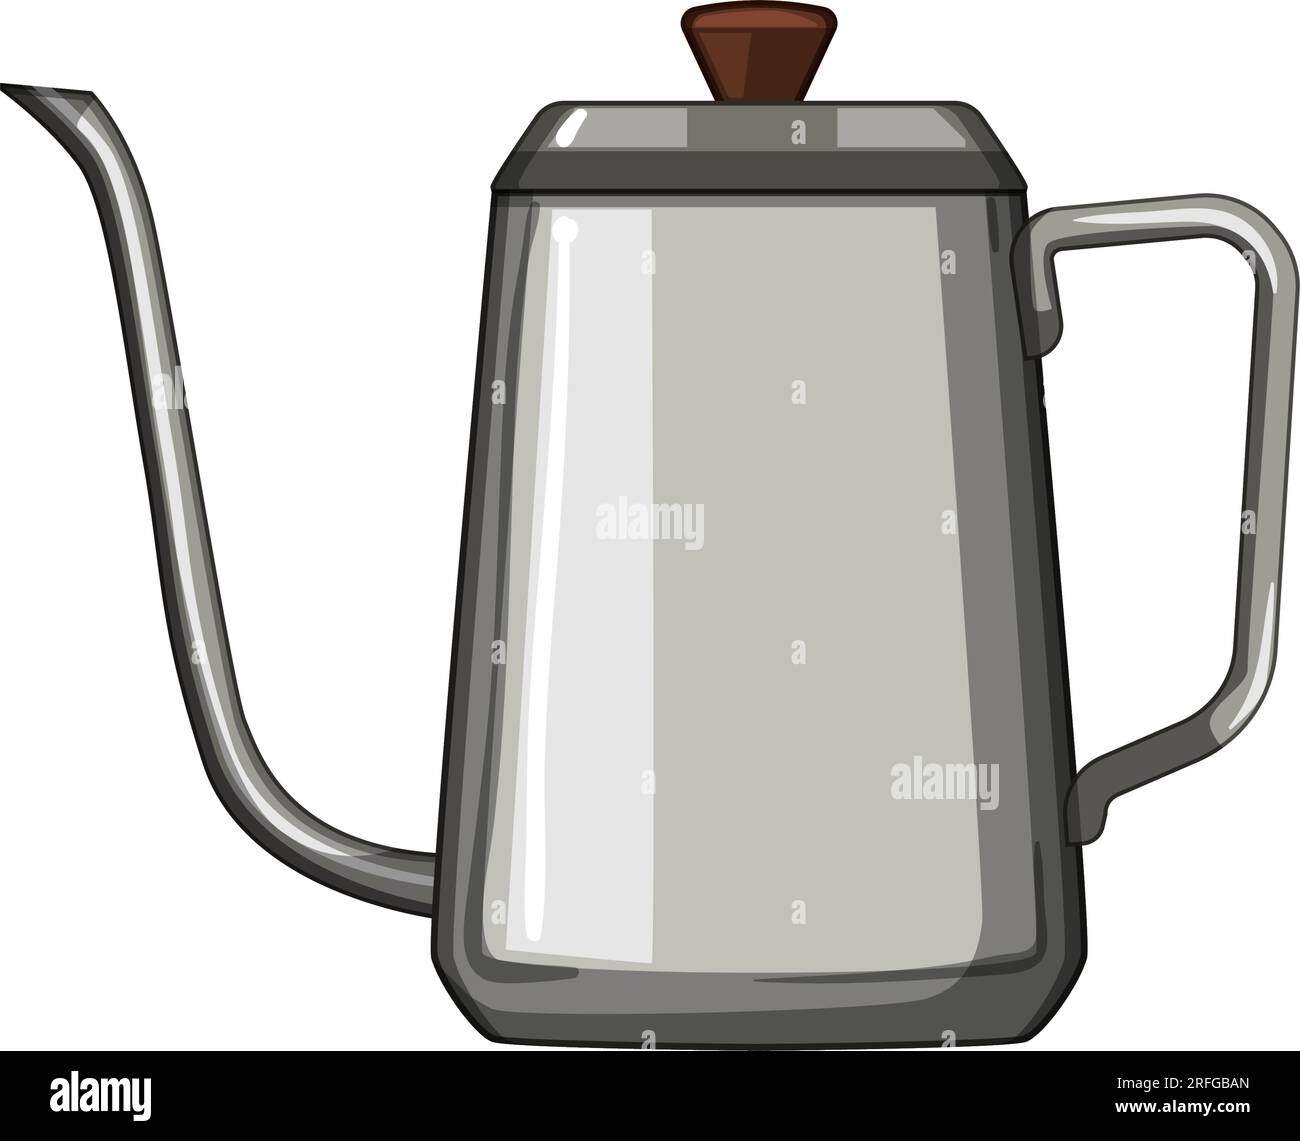 kitchen steel drip kettle cartoon vector illustration Stock Vector